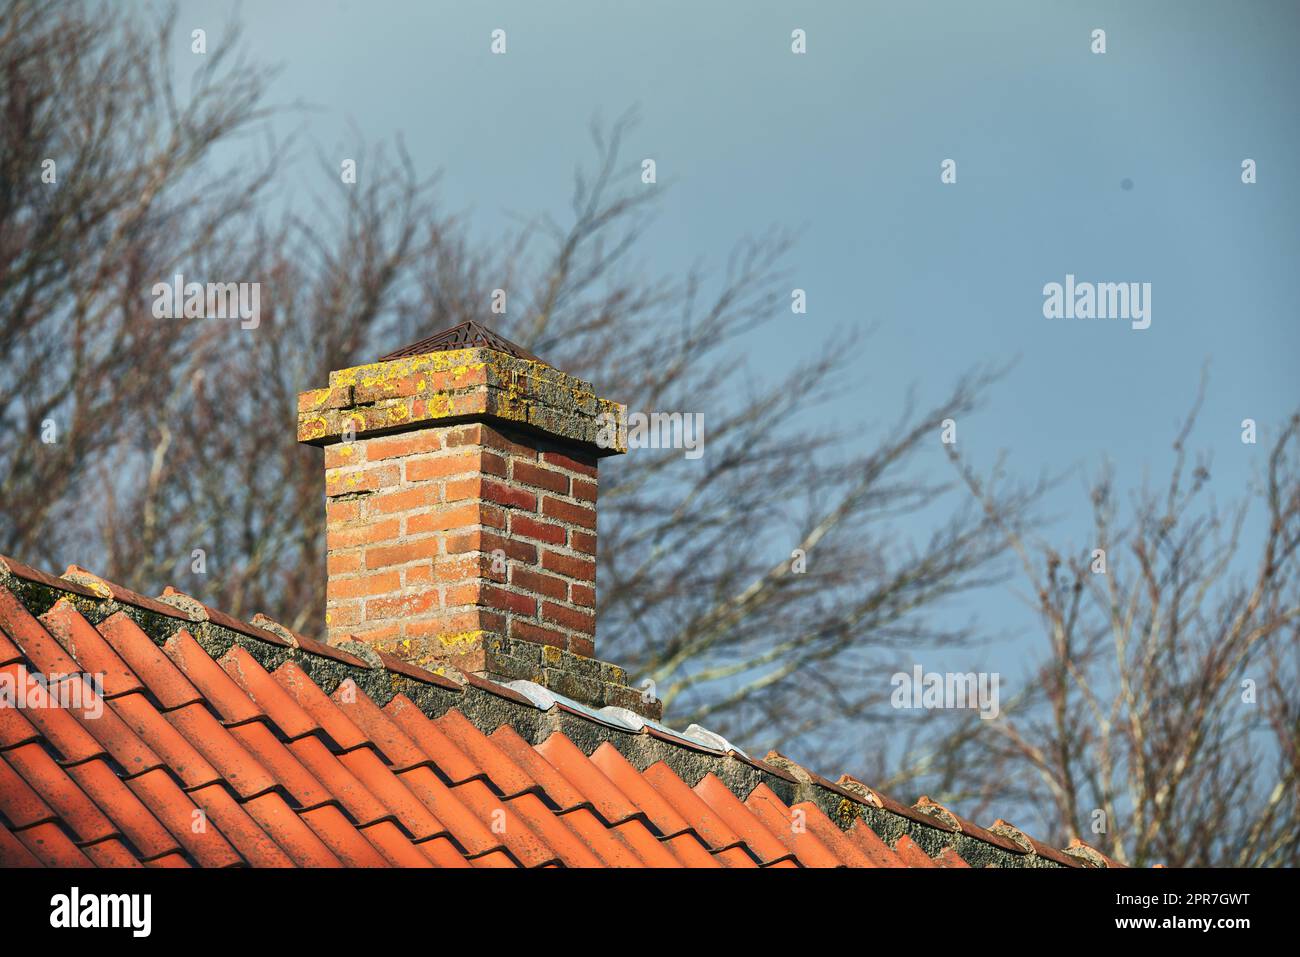 Cheminée en brique rouge conçue sur le toit en ardoise d'amiante de la maison à l'extérieur avec un fond de ciel. Construction extérieure architecture de la rampe d'évacuation construite sur le toit pour la fumée et la chaleur de la cheminée Banque D'Images